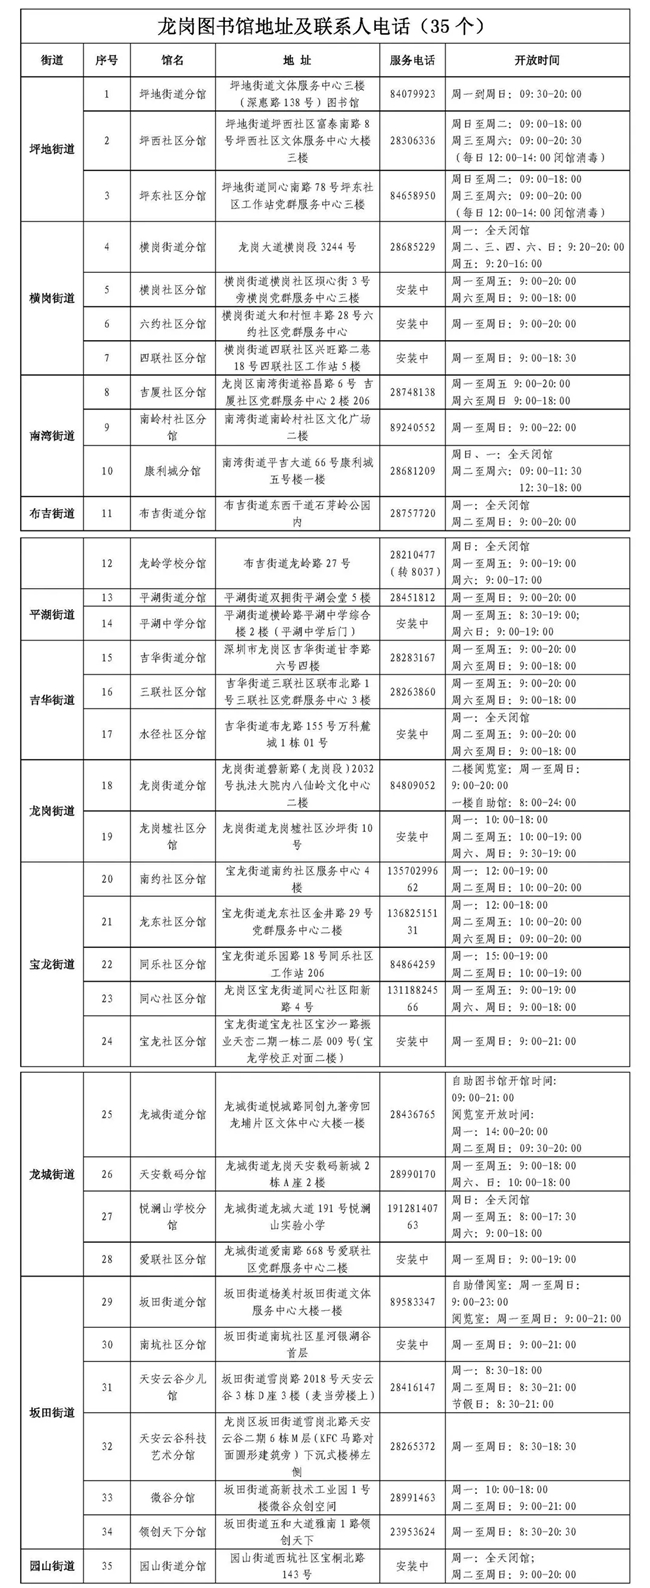 深圳龙岗图书馆各分馆地址与开放时间一览表